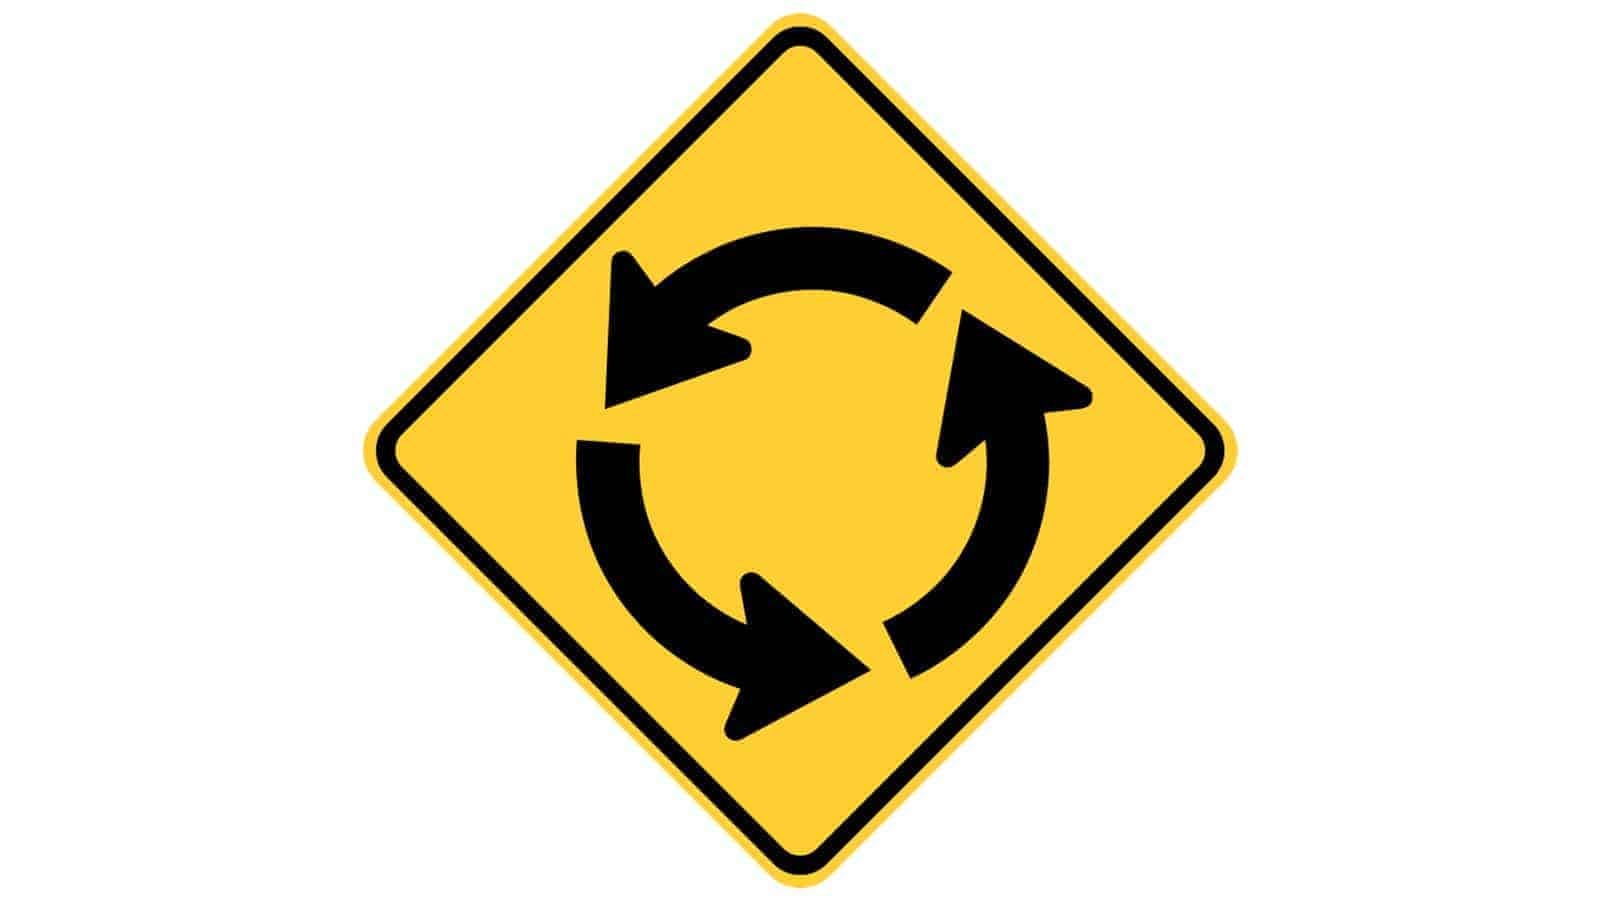 Warning sign Circular Intersection Warning (Roundabout)